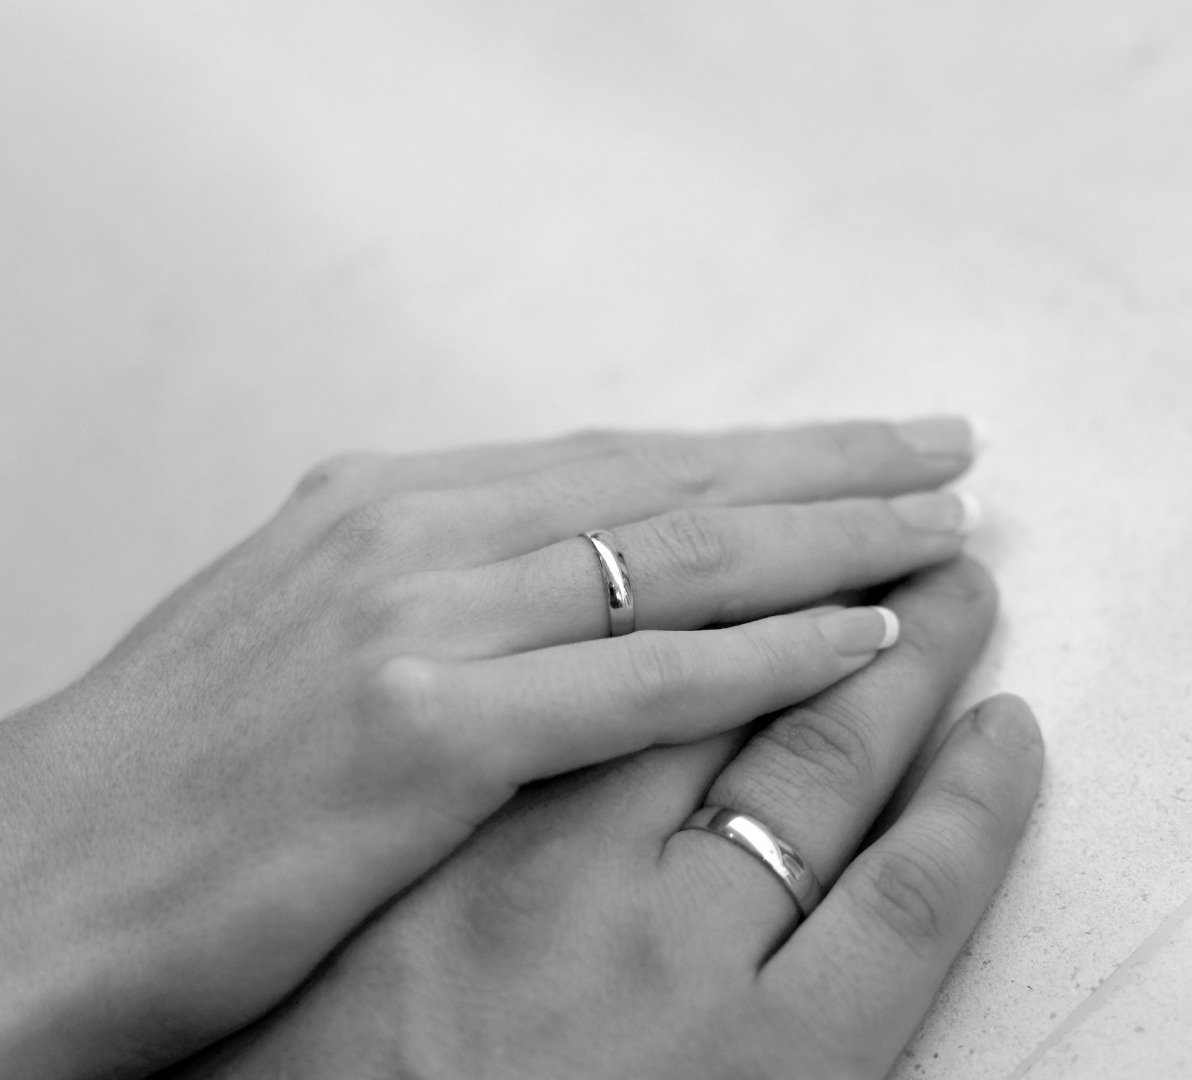 Разведенные на какой руке кольцо. Обручальные кольца на руках. Кольцо на руке. Две руки с обручальными кольцами. Мужские обручальные кольца на руке.